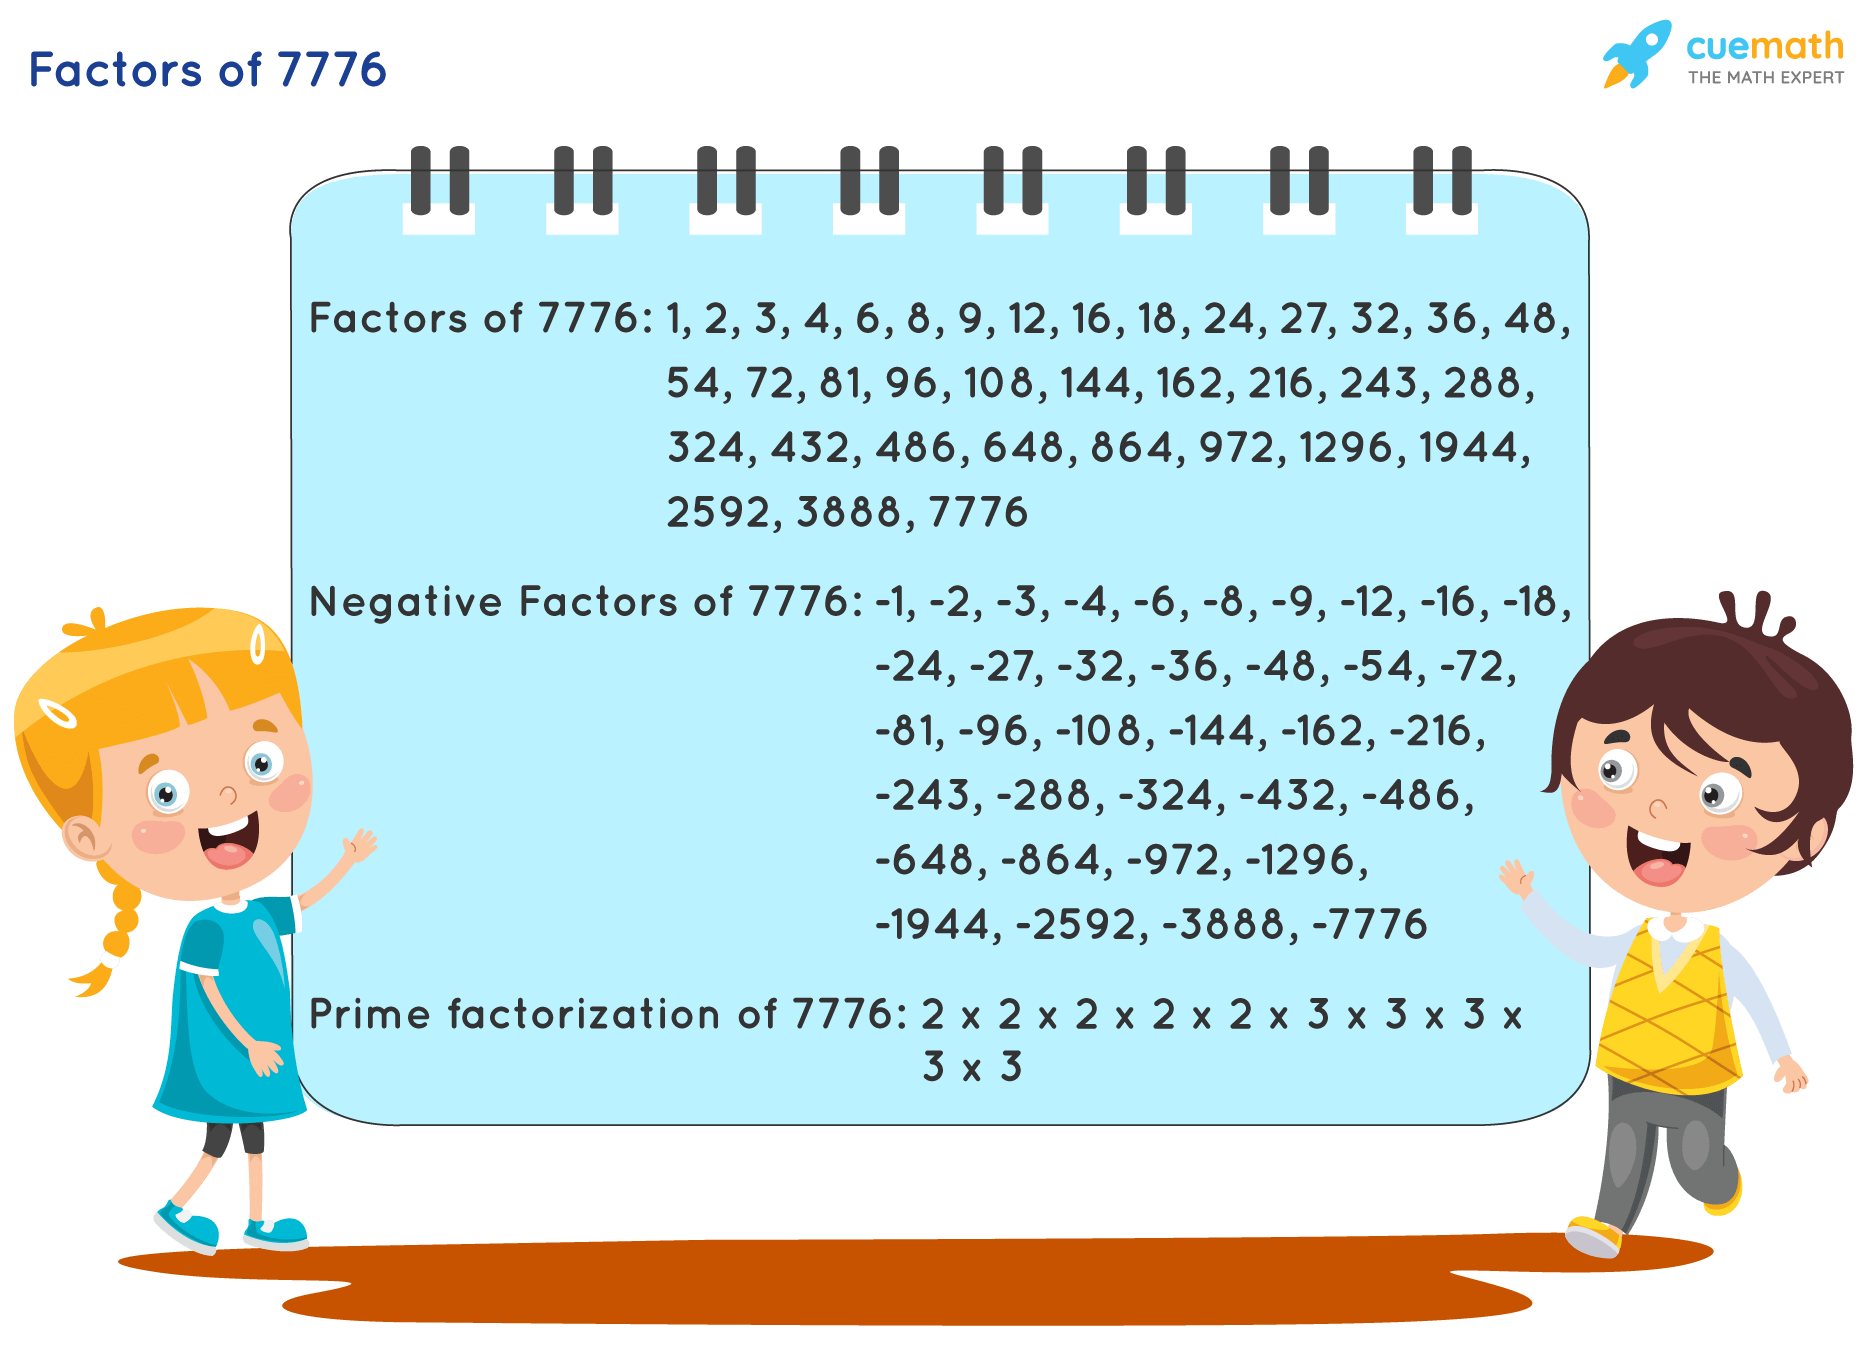 Factors of 7776